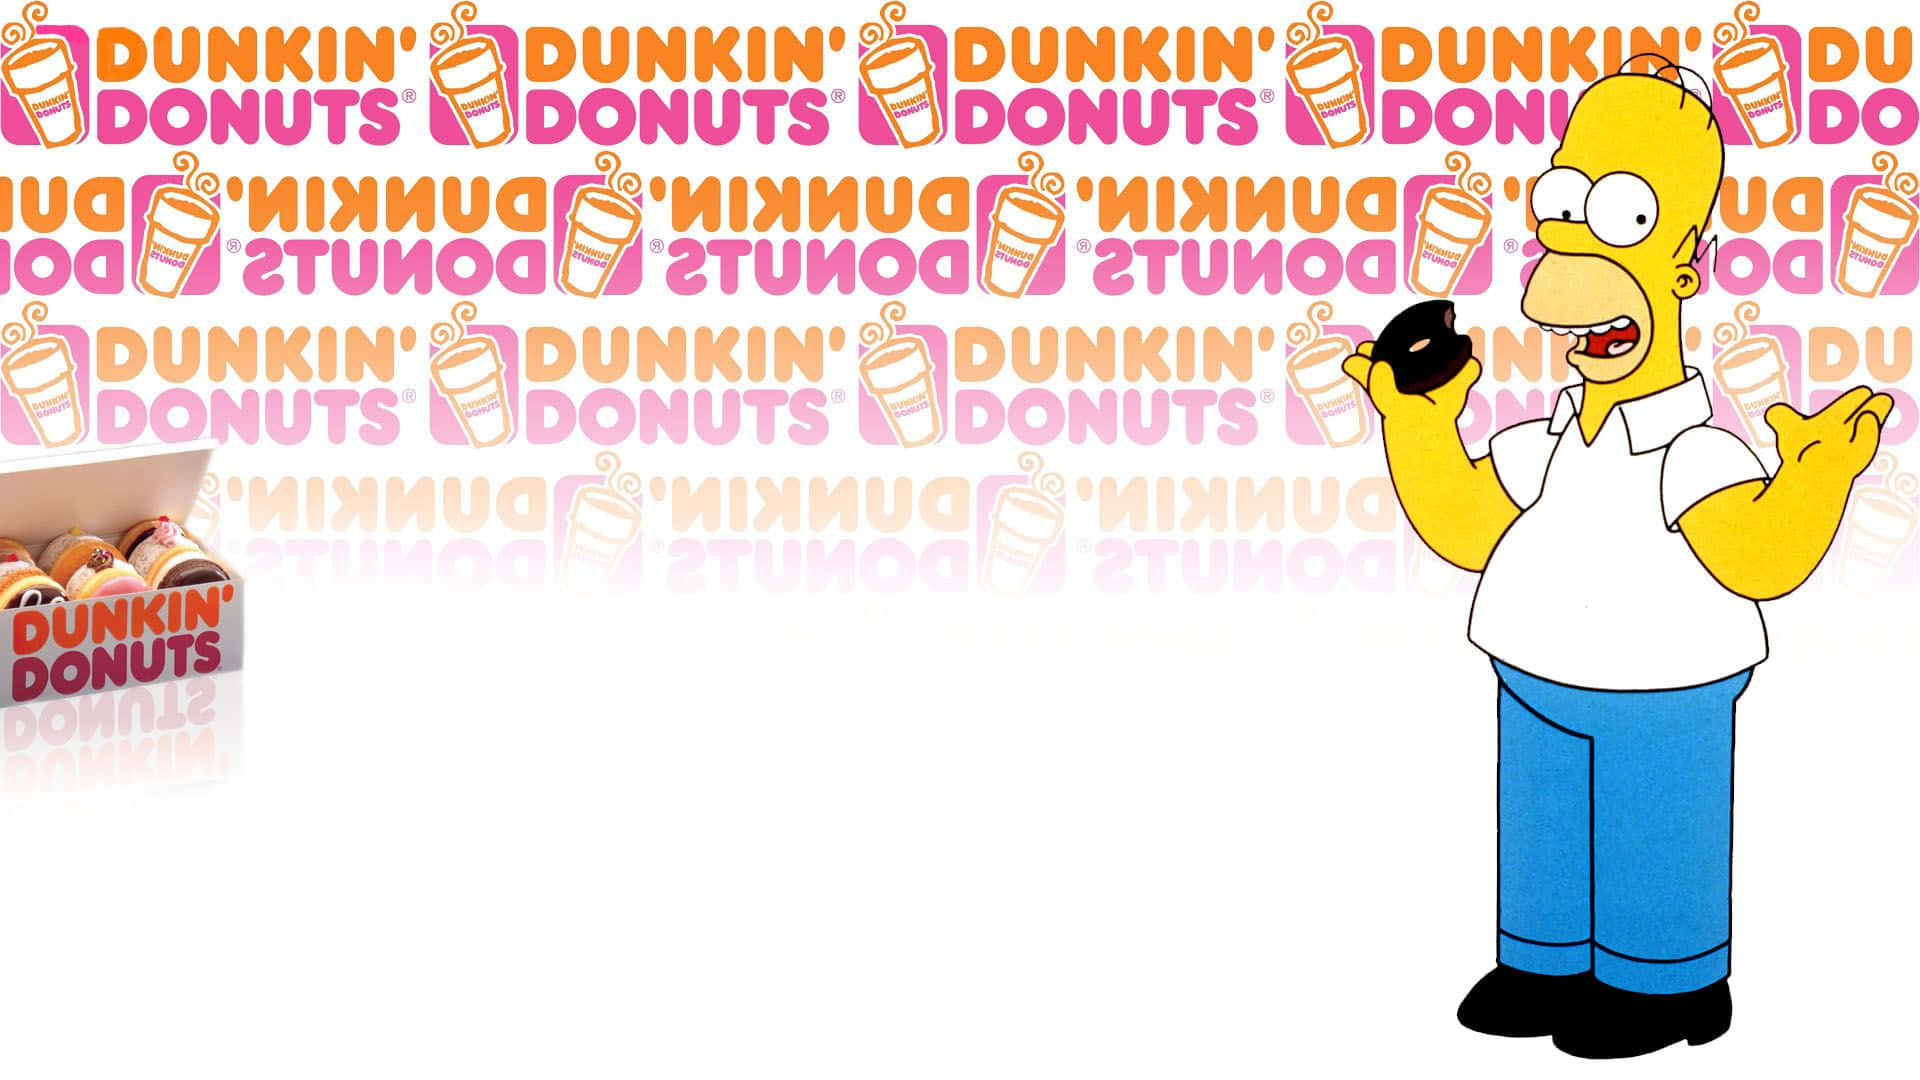 Soddisfale Tue Voglie Con Dunkin Donuts!